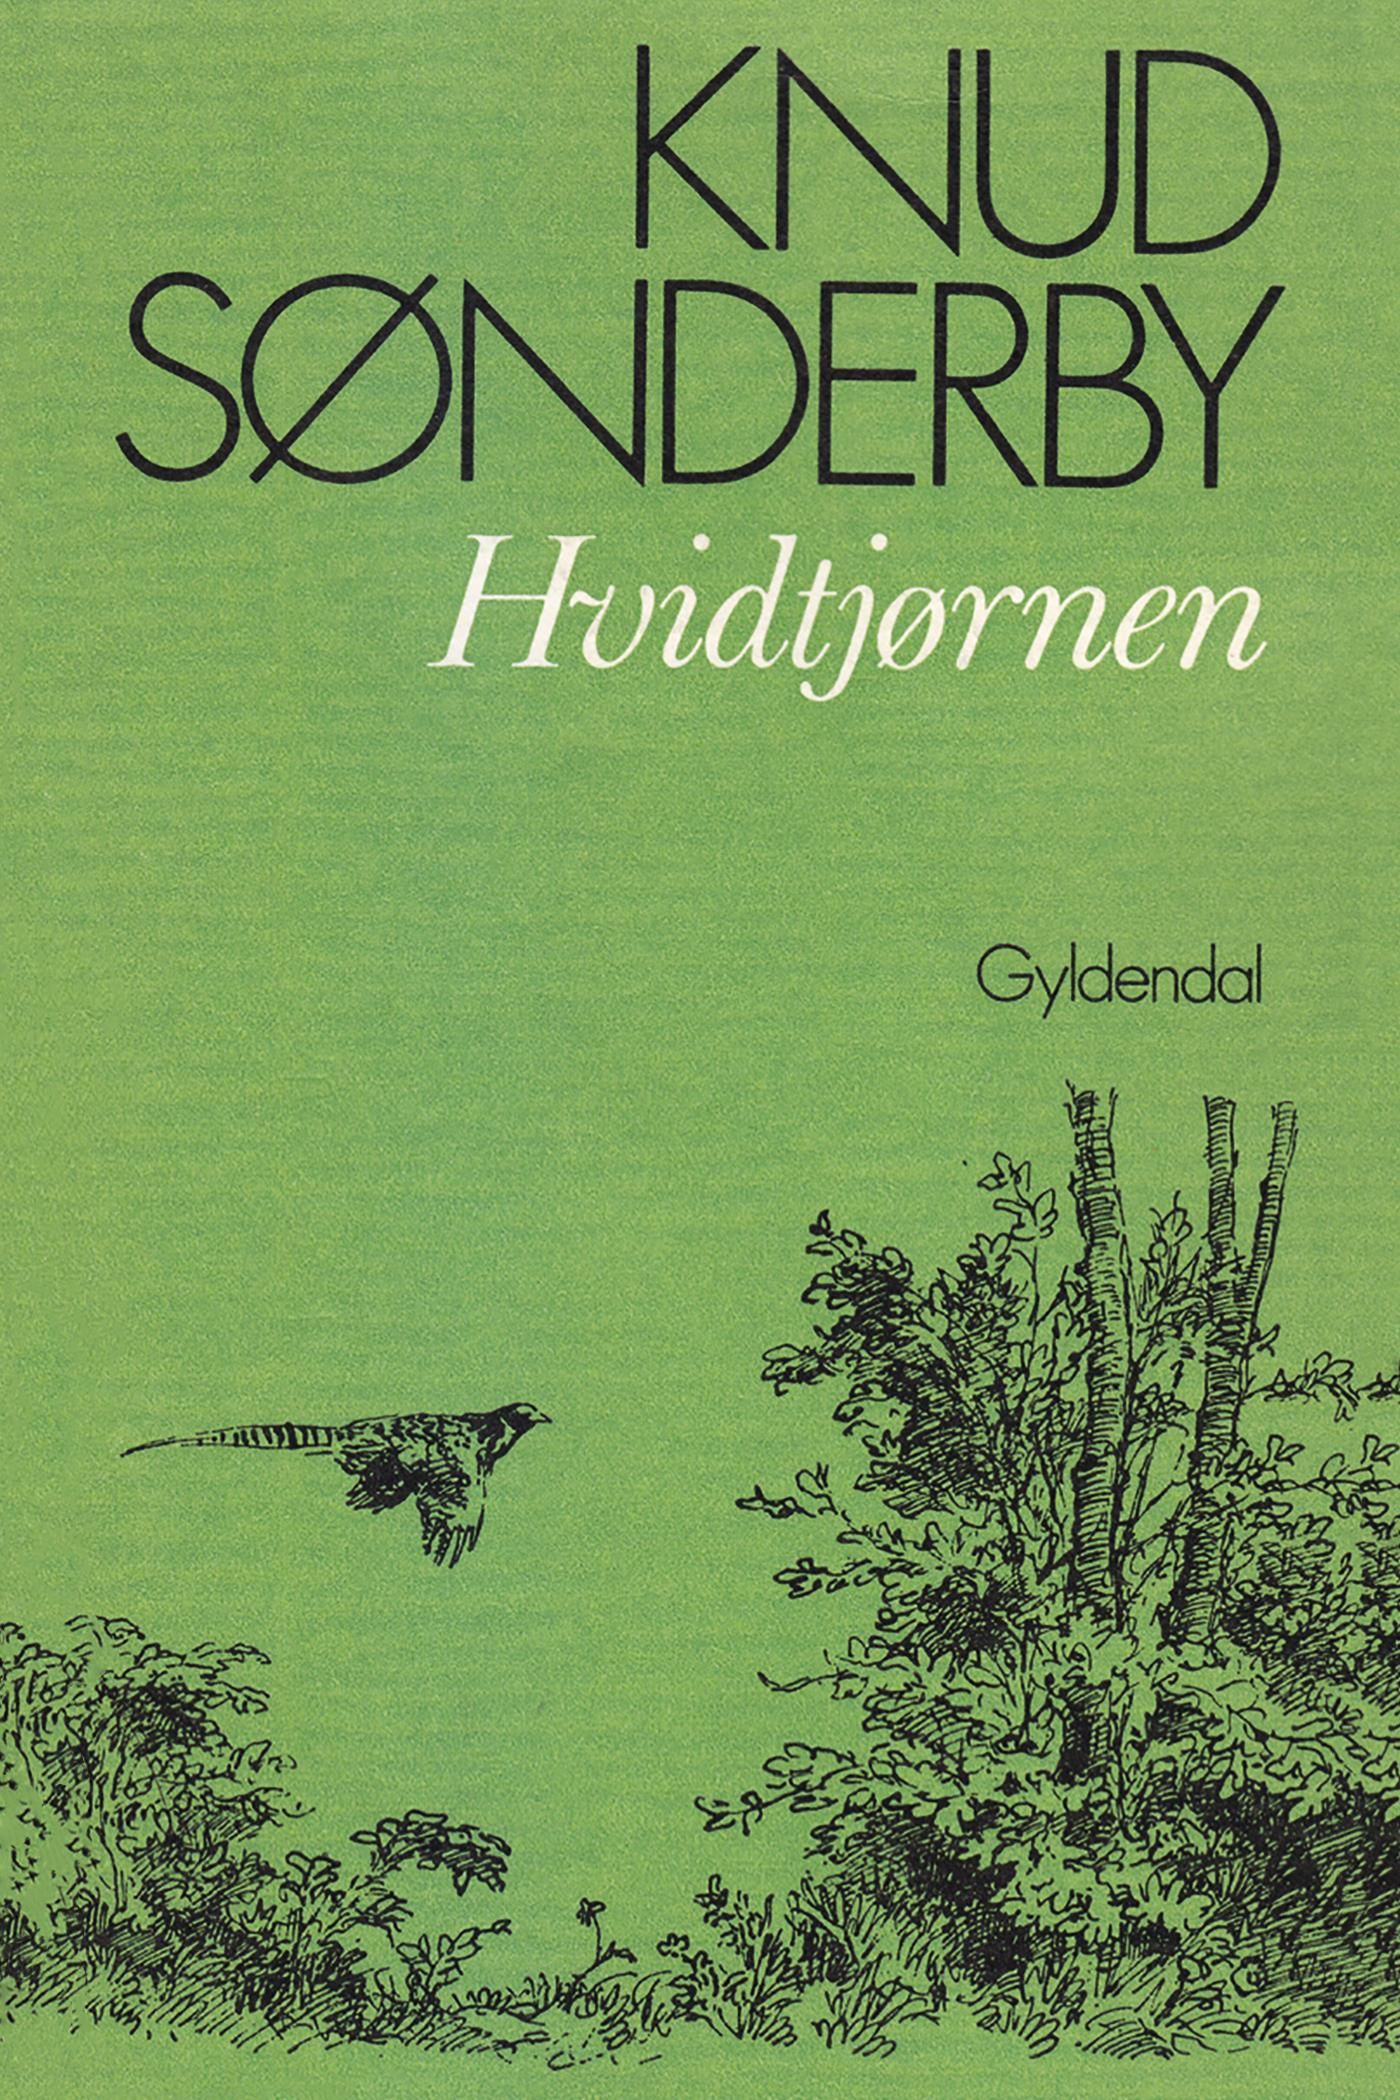 Hvidtjørnen, eBook by Knud Sønderby